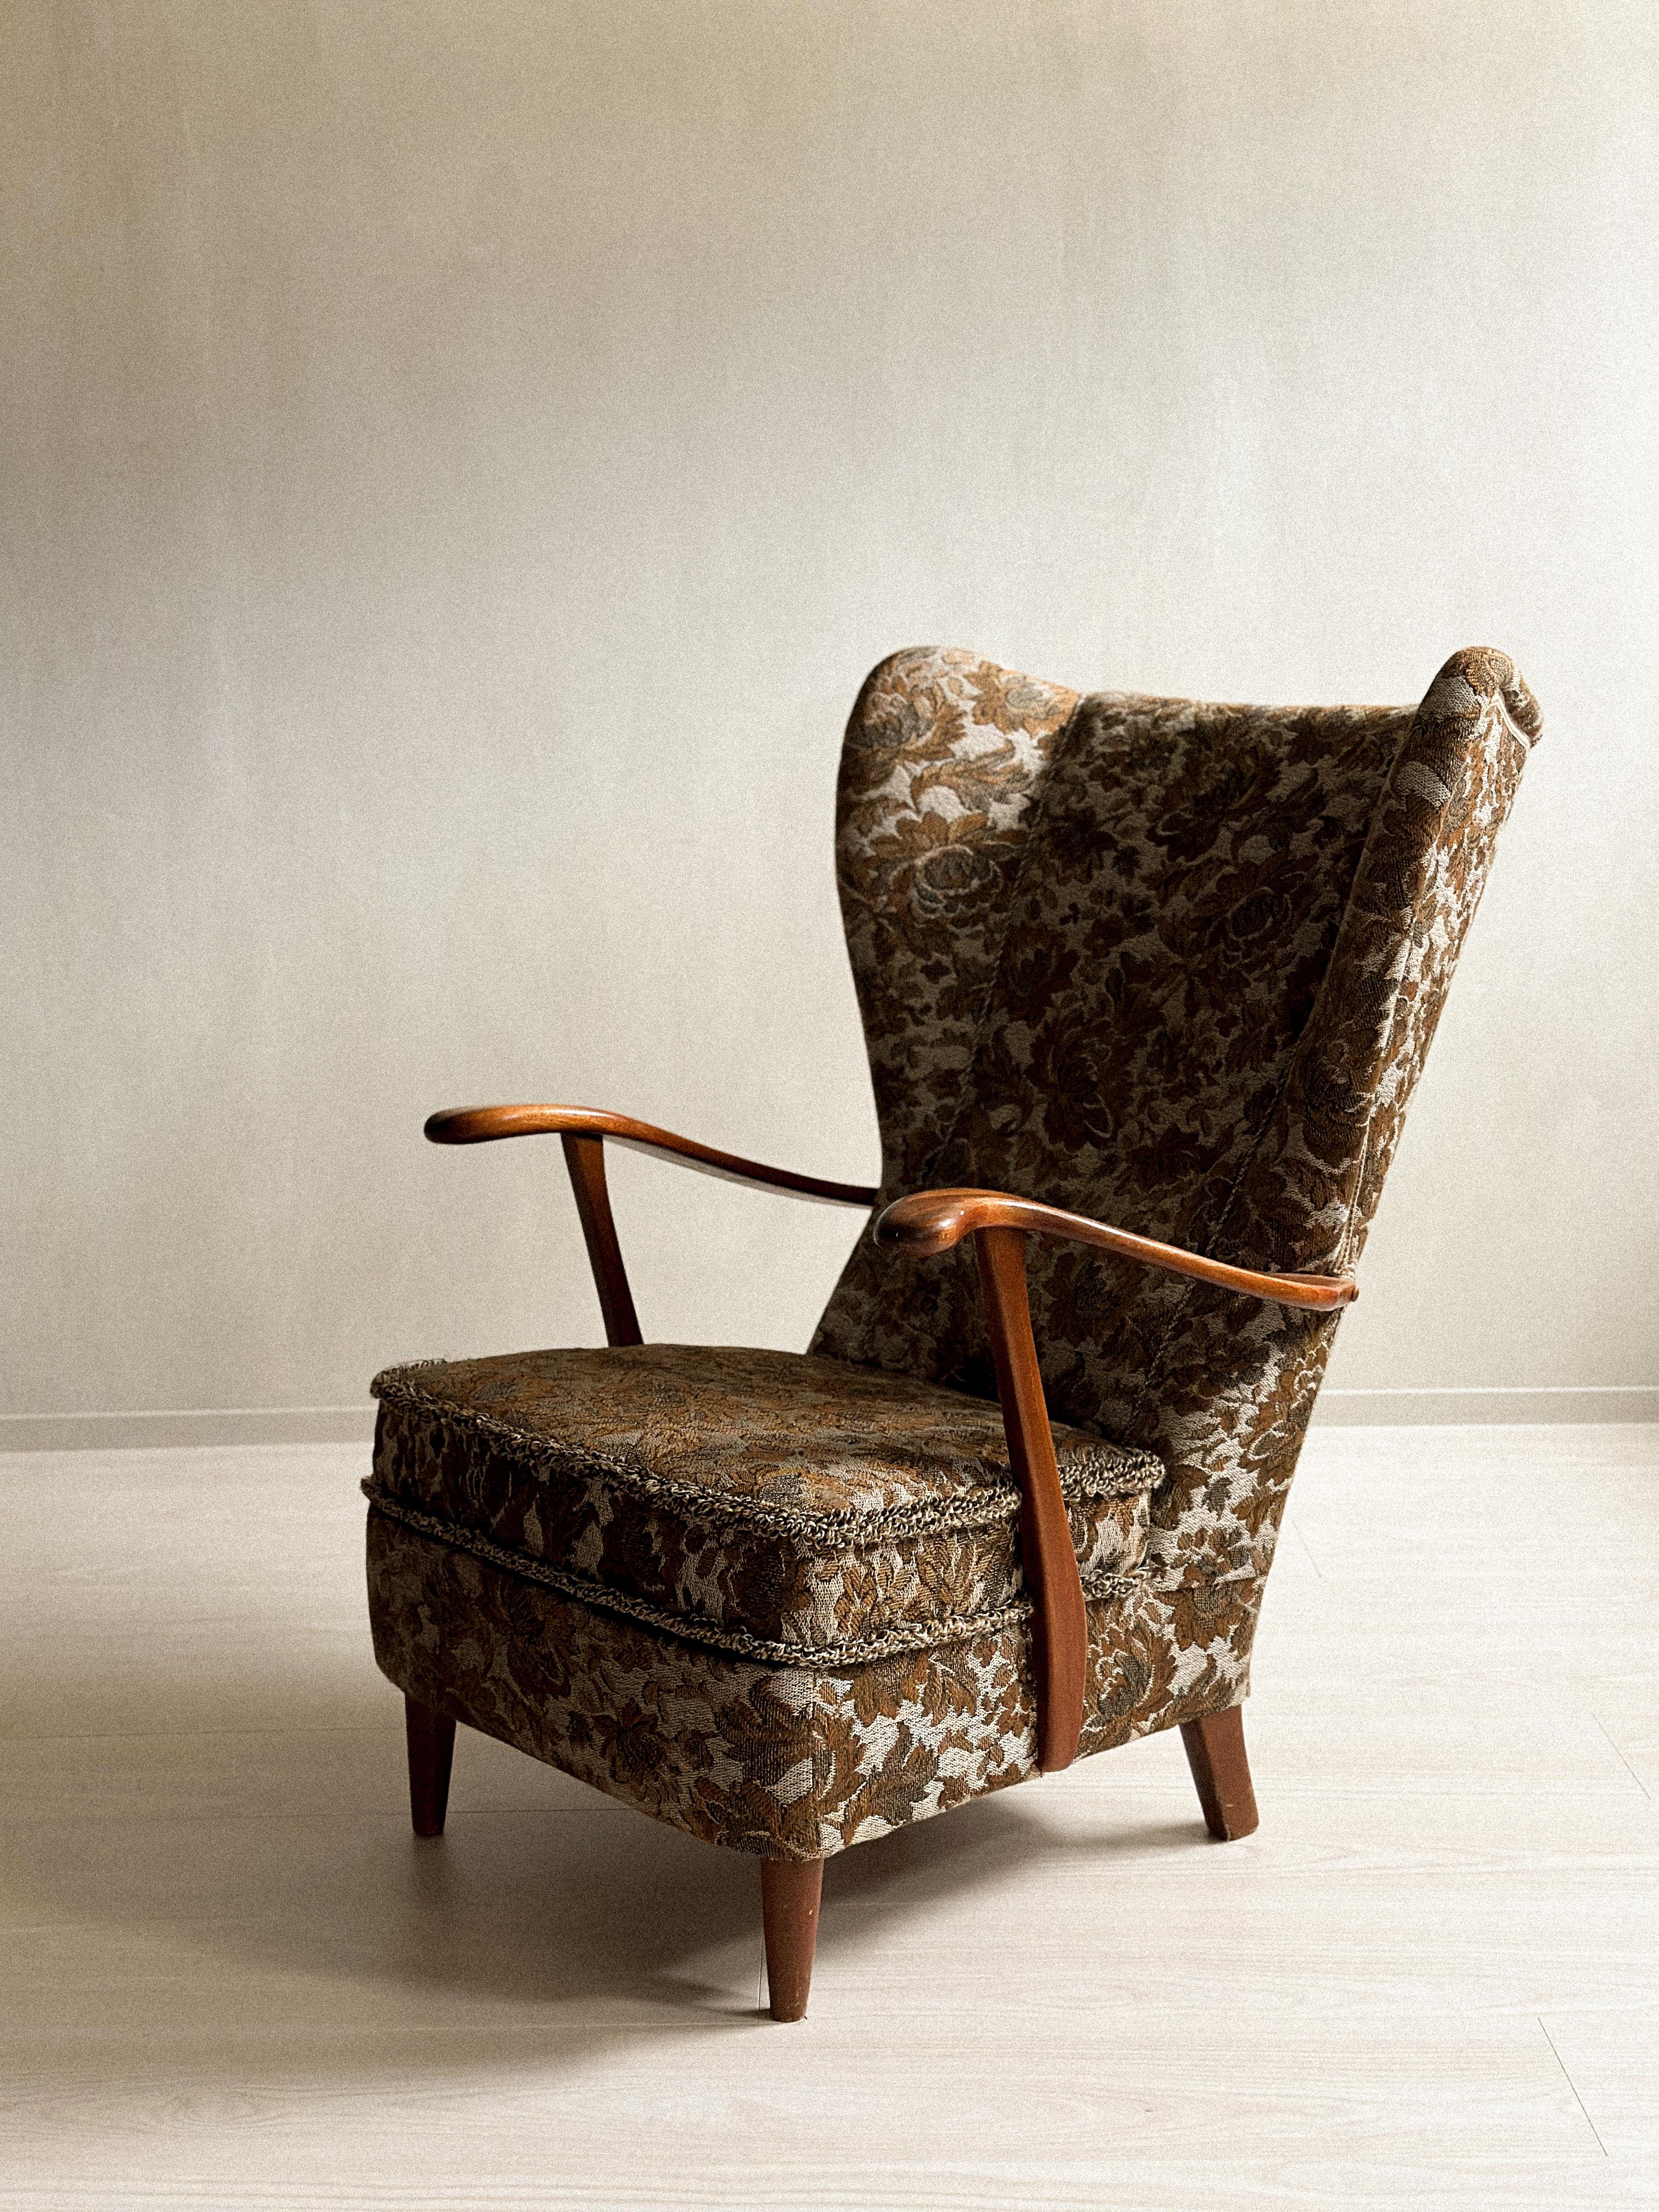 Die praktischen und komfortablen Entwürfe der dänischen Möbelschreiner prägten die modernen Sitzmöbel der Mitte des 20. Jahrhunderts. Die dänischen Möbelschreiner konzentrierten sich auf minimalistisches Design, das von fachkundigen Handwerkern